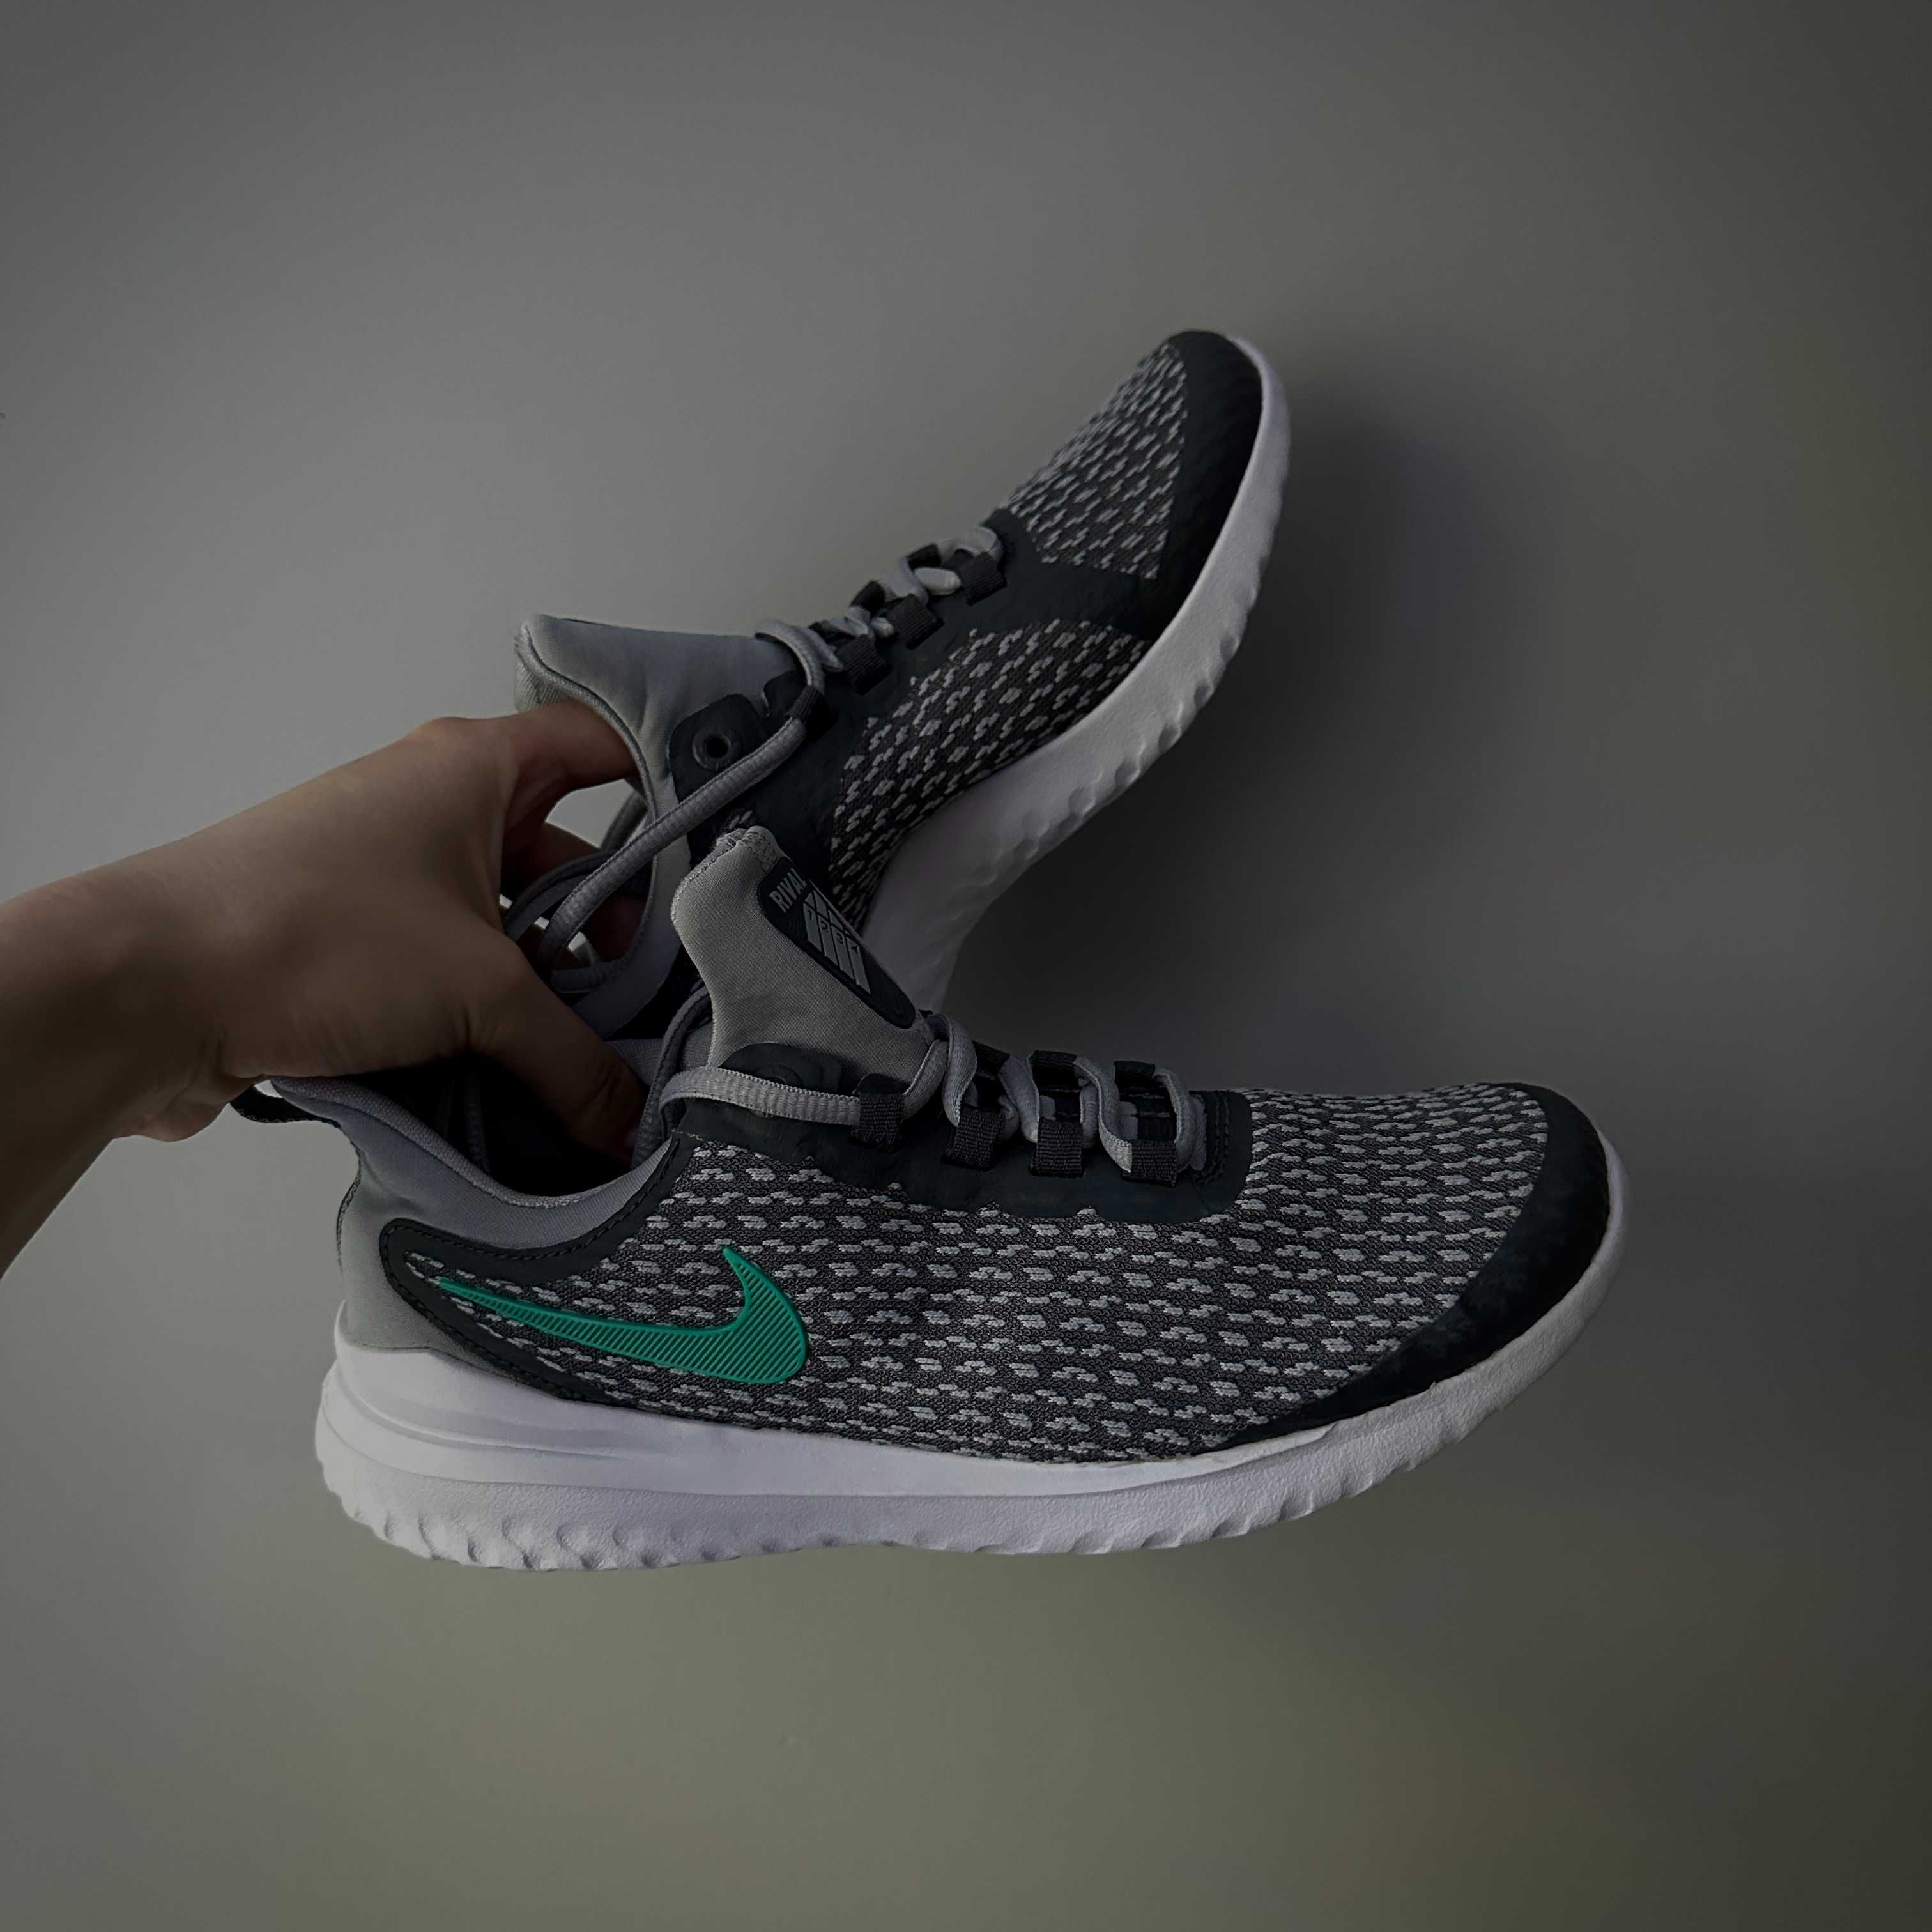 ОРИГІНАЛЬНІ кросівки Nike Renew Rival, нові, сток, без коробки